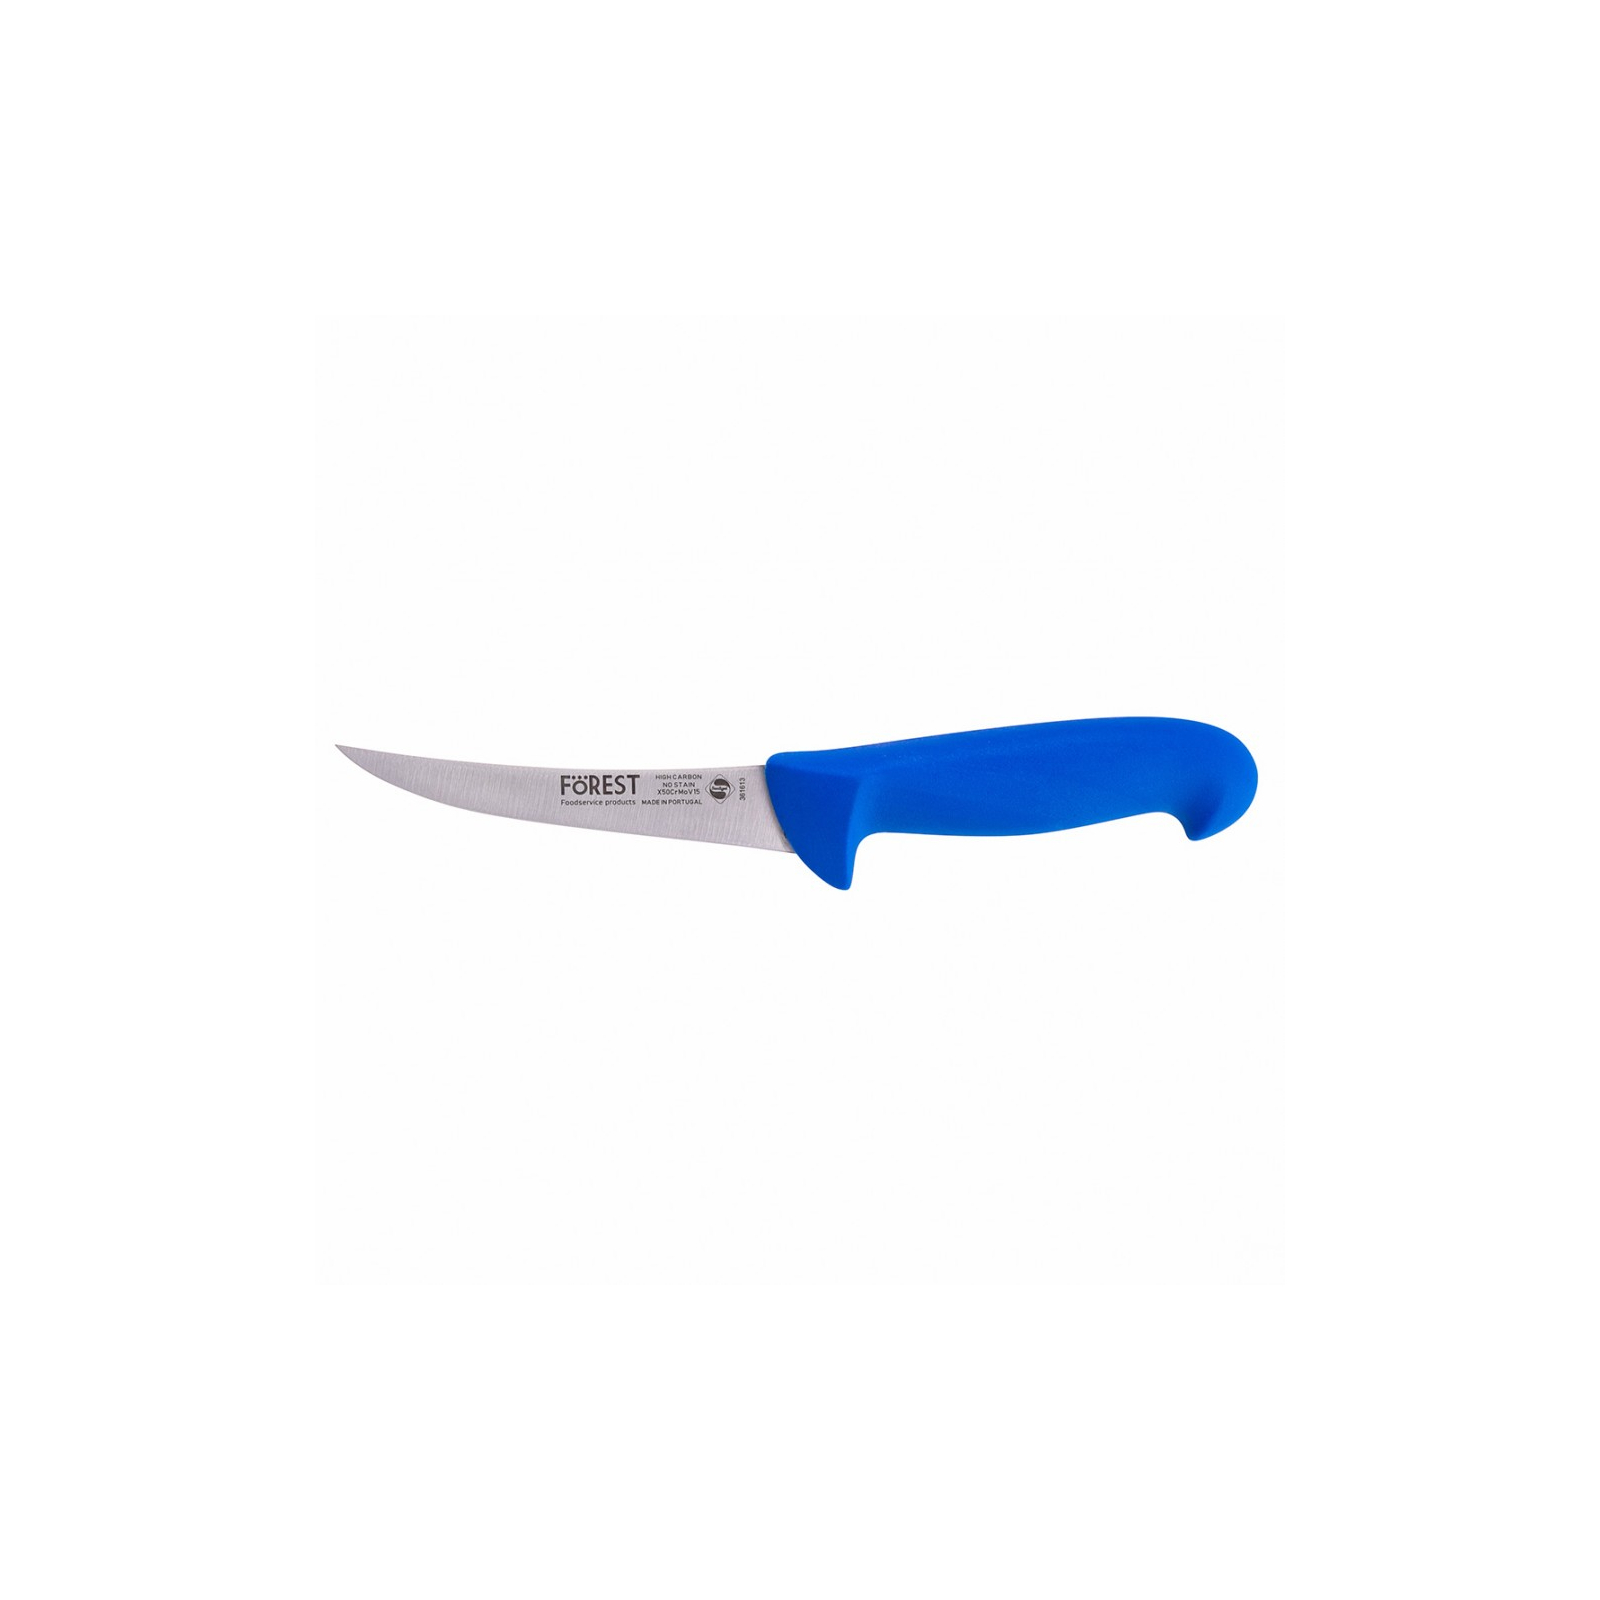 Кухонный нож FoREST обвалювальний напівгнучкий 130 мм Синій (361613)